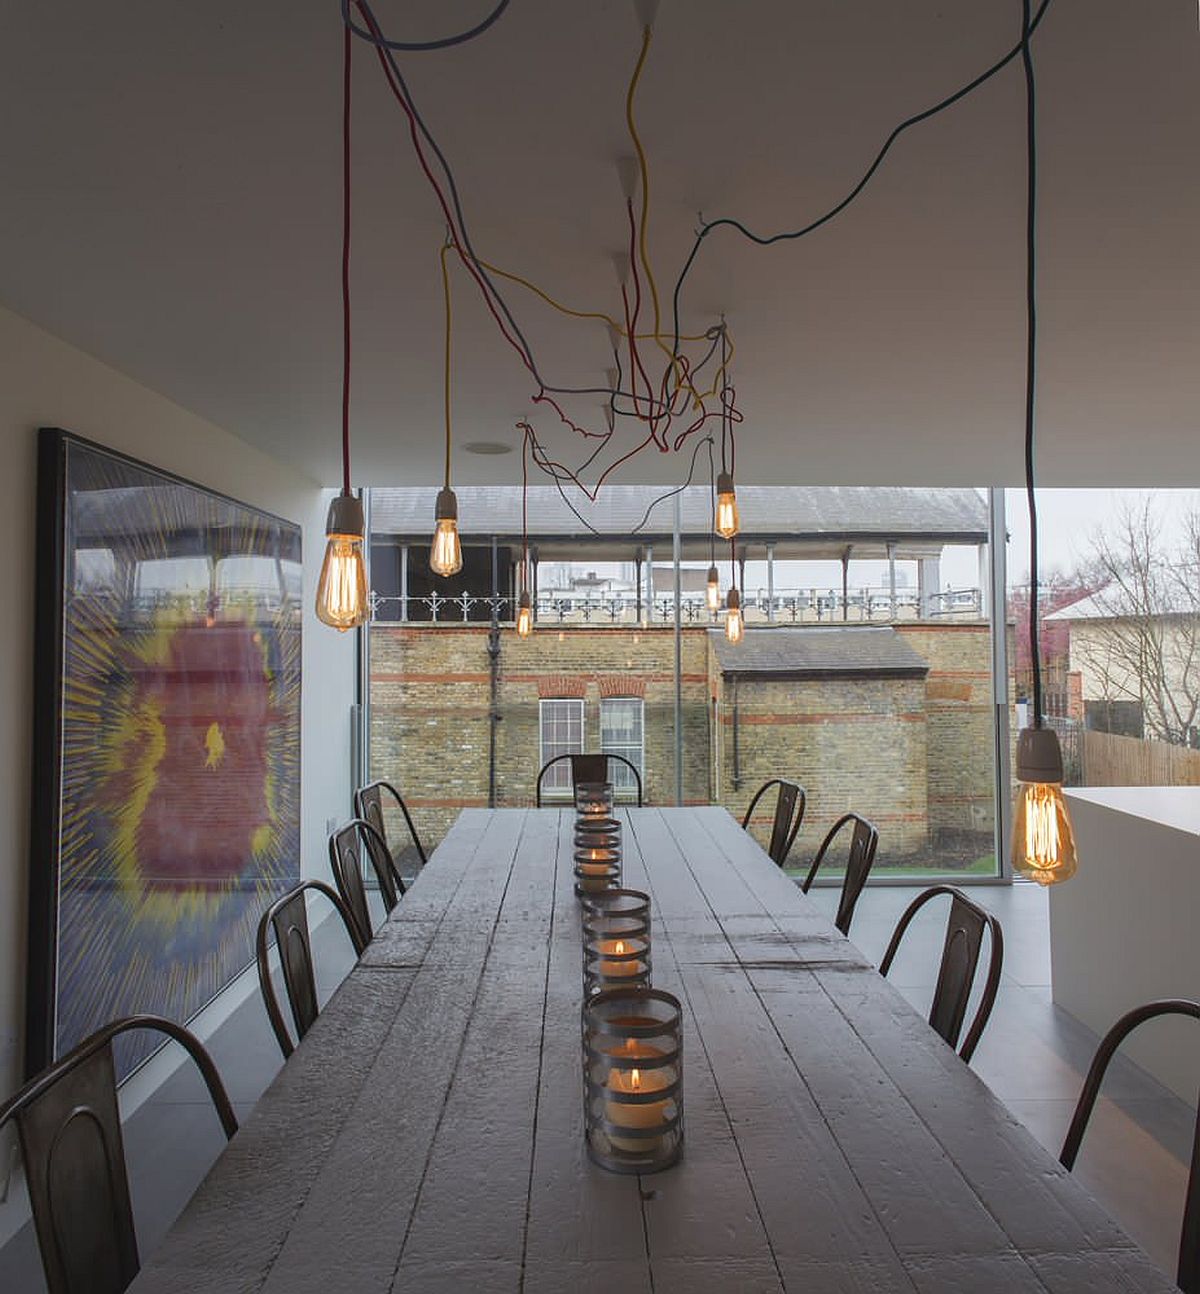 Hệ thống chiếu sáng bằng bóng đèn Edison tạo thêm nét công nghiệp cho không gian ăn uống tối giản hiện đại này